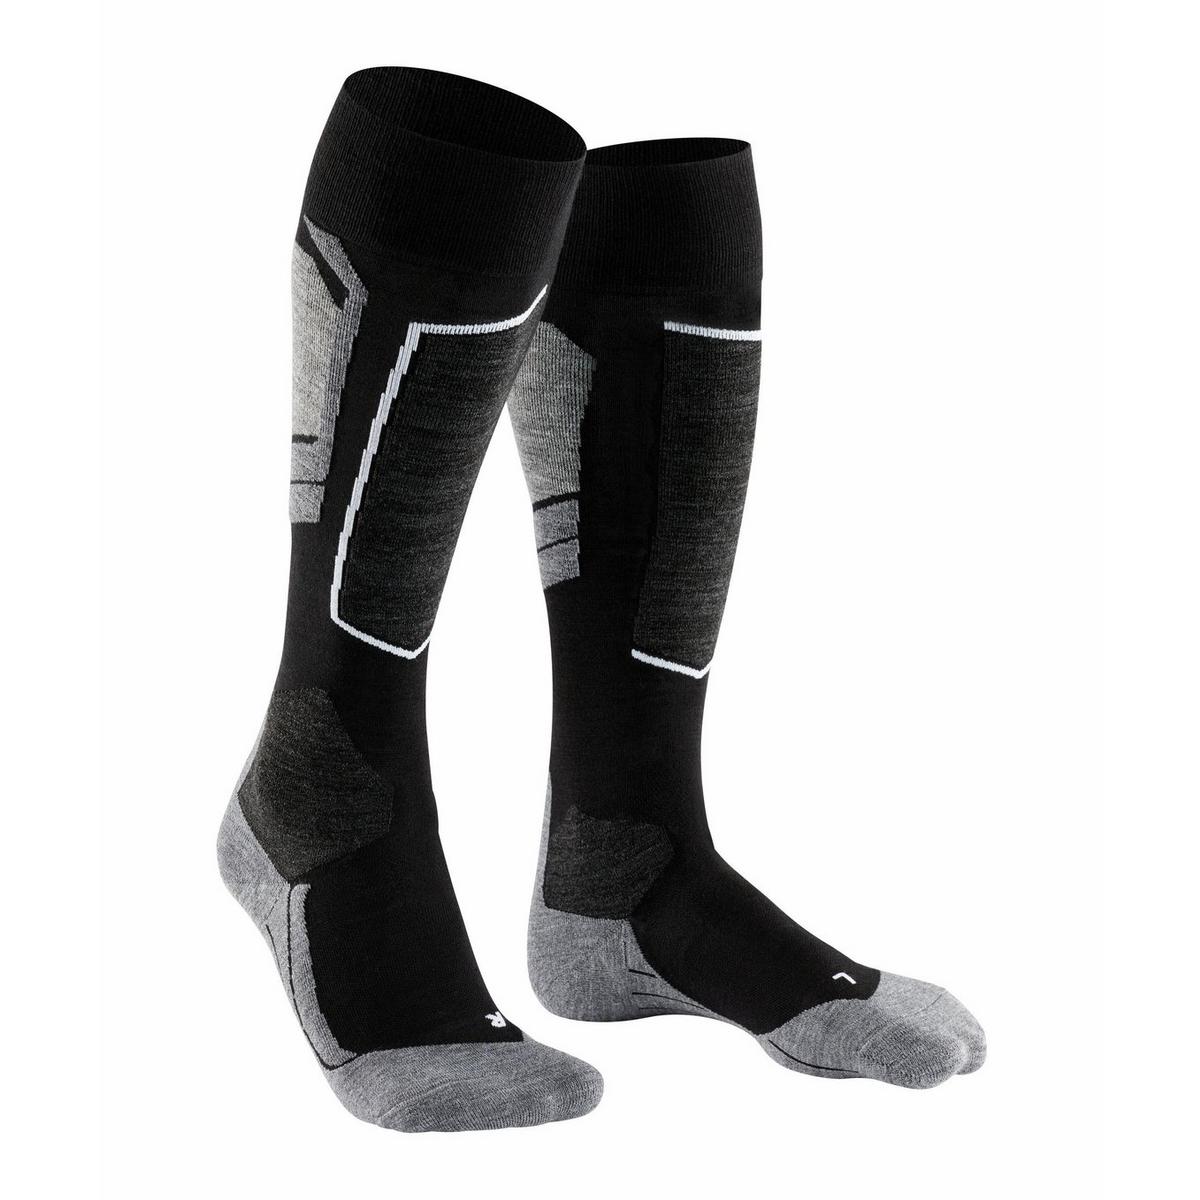 Falke Men's SK4 Ski Sock - Black